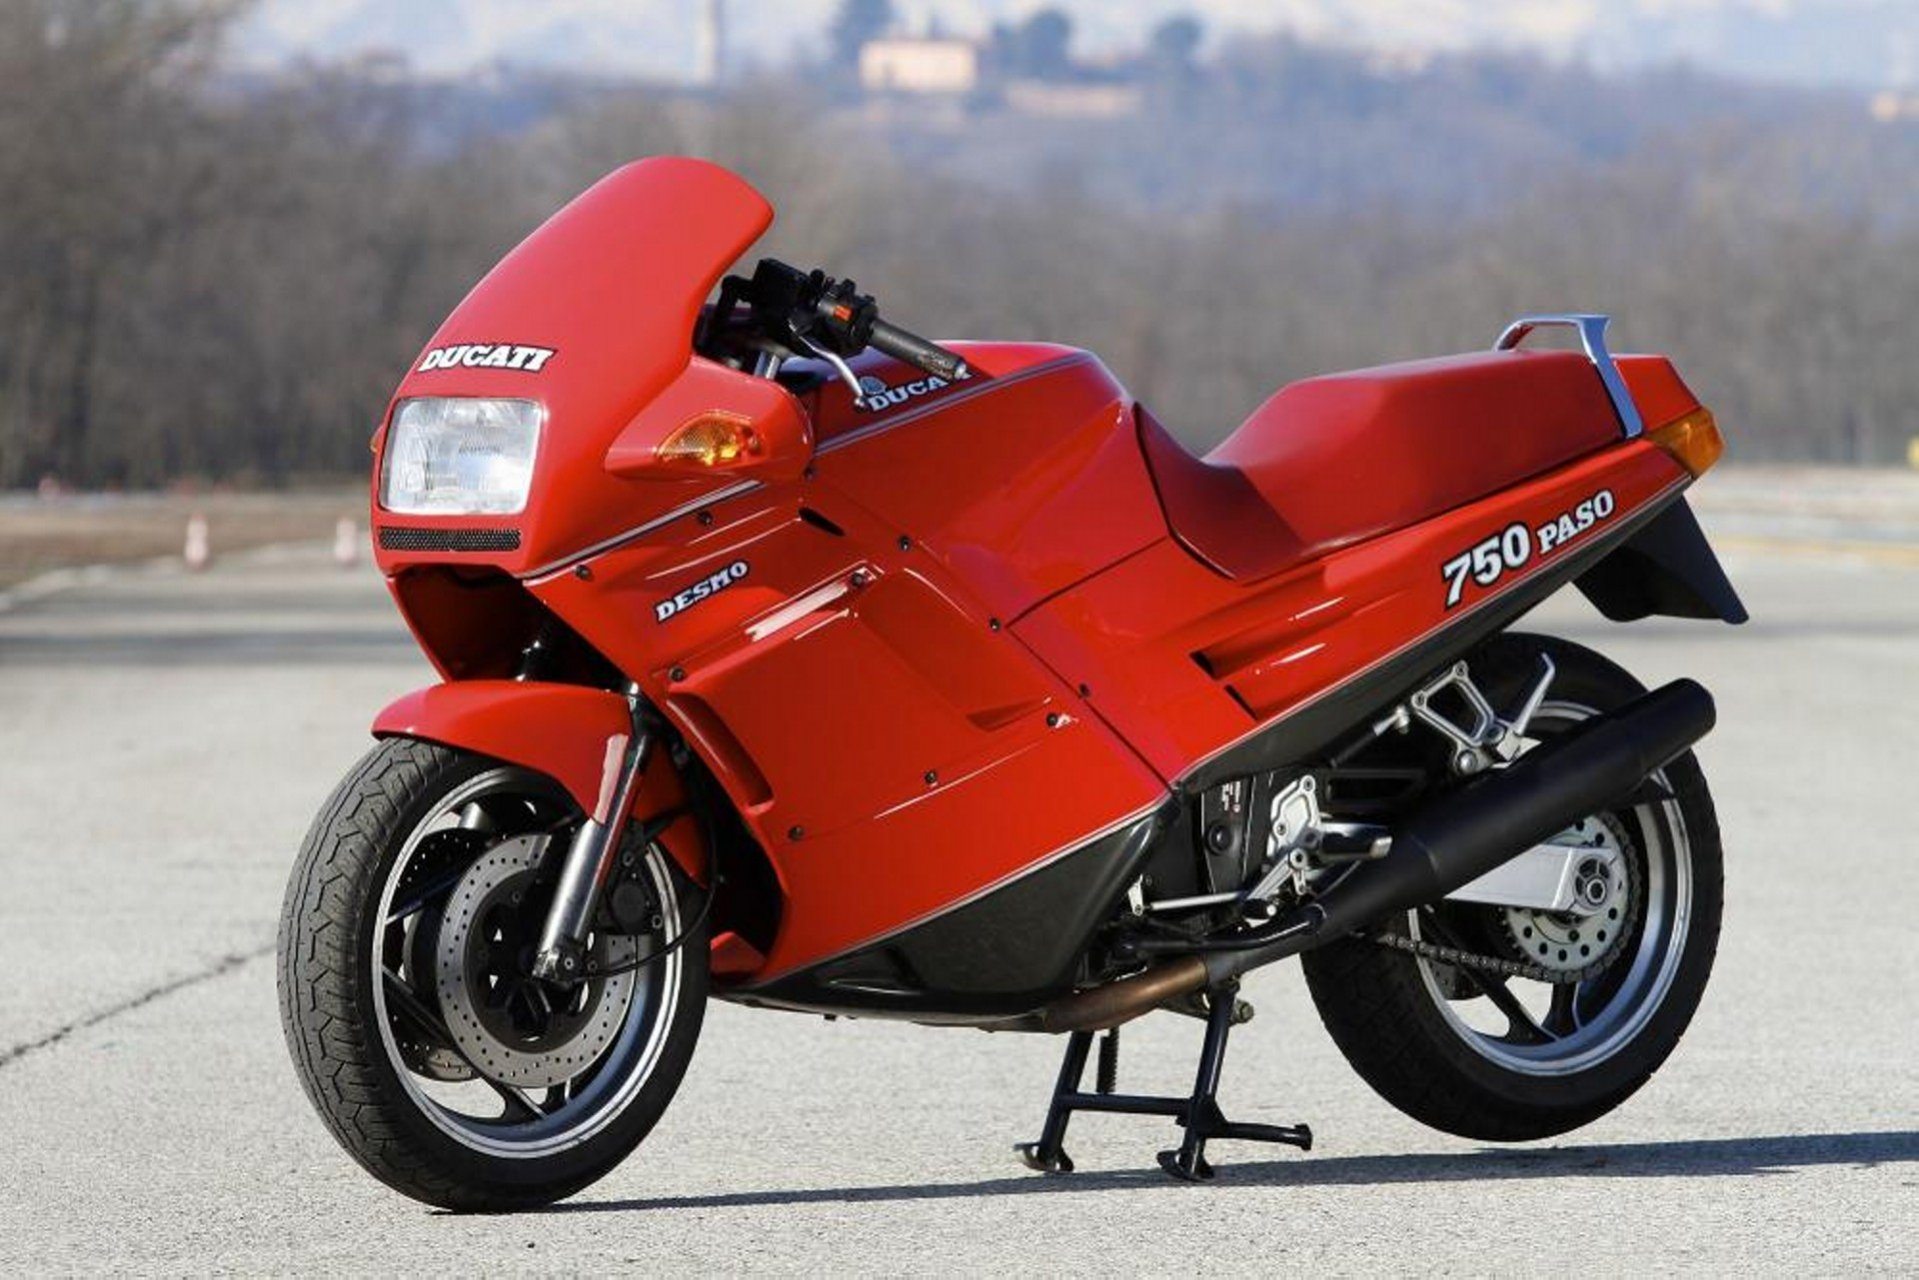 Moto del día Ducati Paso 750 espíritu RACER moto